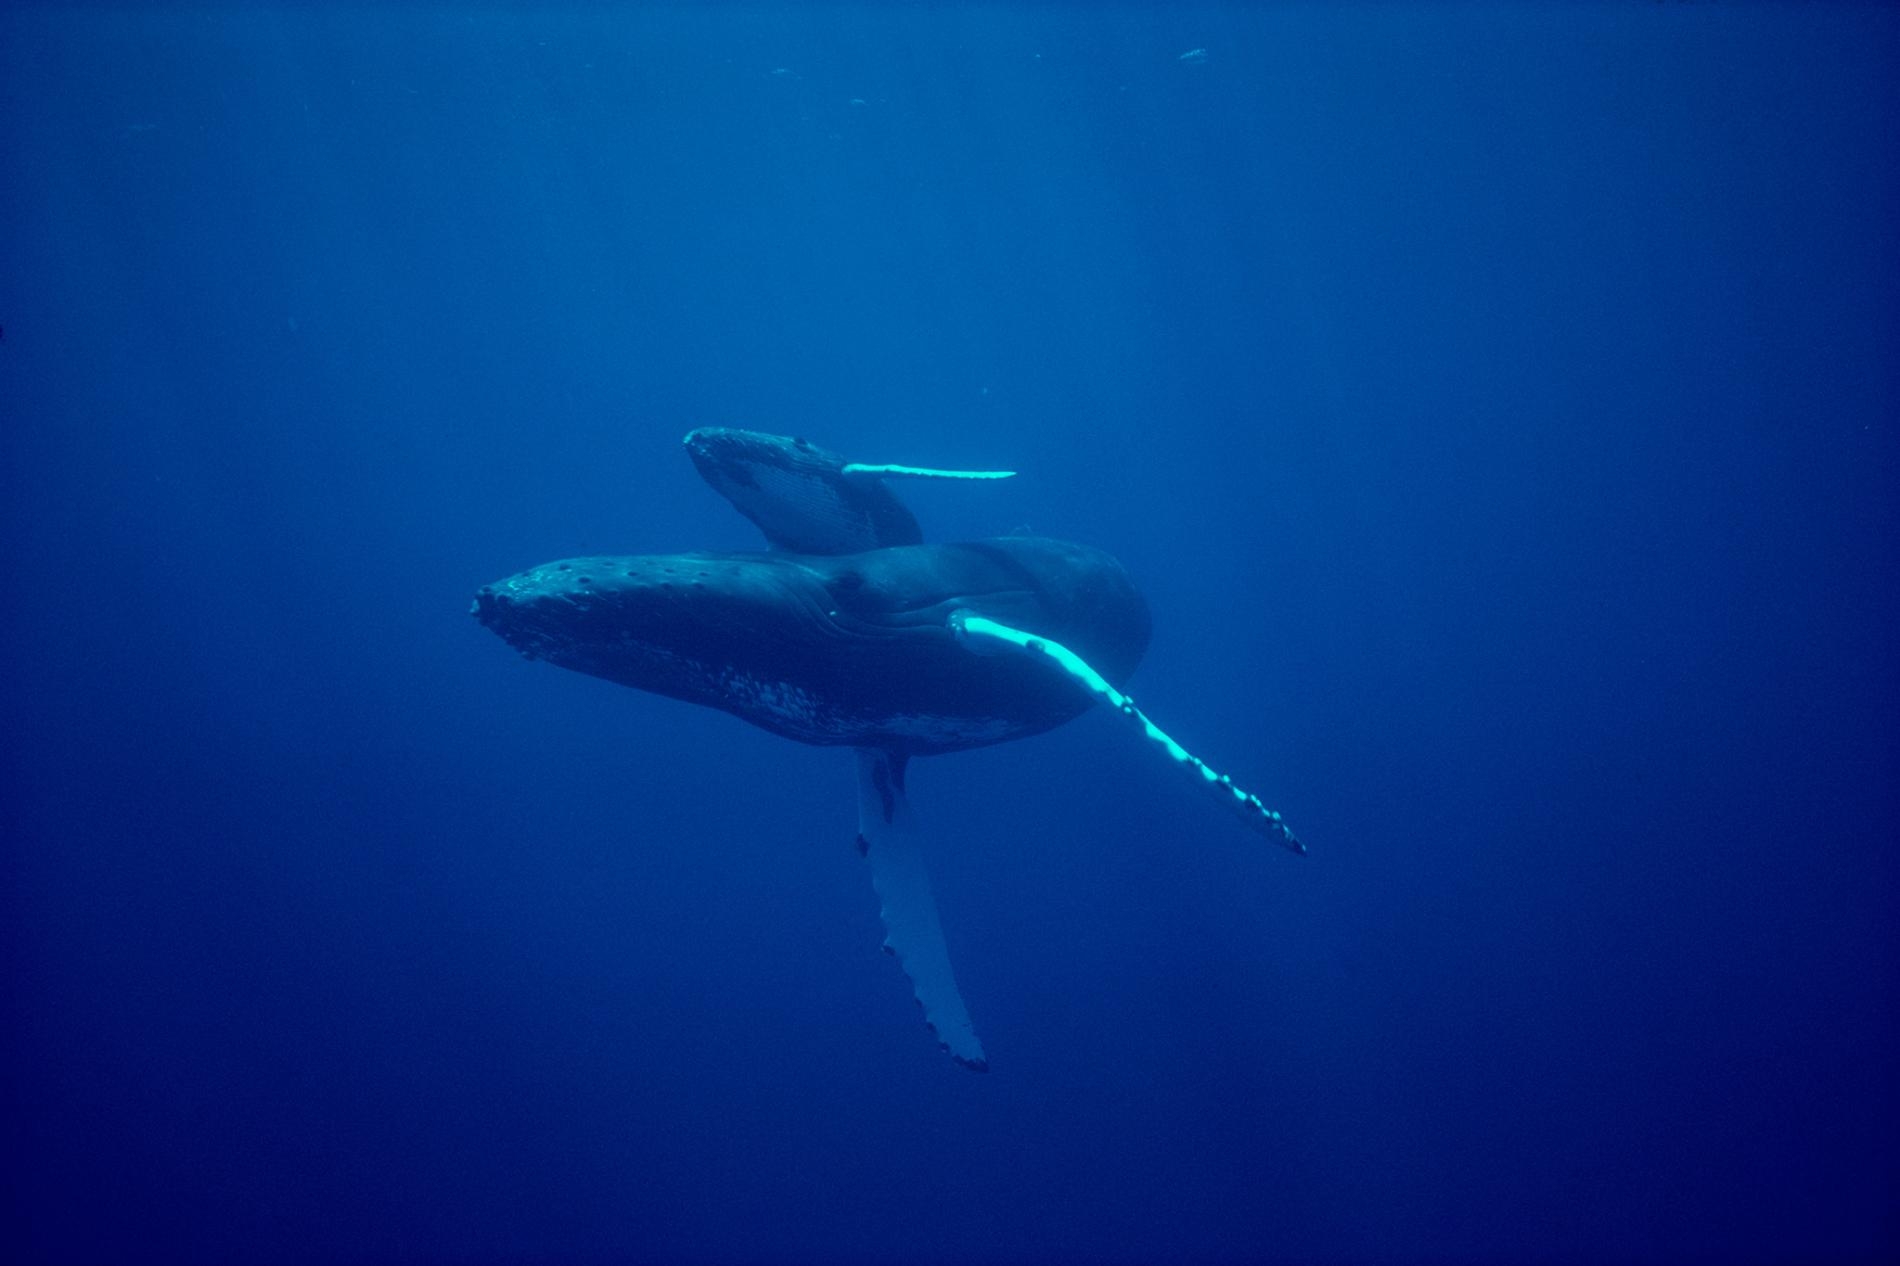 一對座頭鯨母子在夏威夷周邊海域優游。這種哺乳動物每年夏天會在這個區域生產和養育下一代 PHOTOGRAPH BY FLIP NICKLIN, MINDEN PICTURES/NAT GEO IMAGE COLLECTION